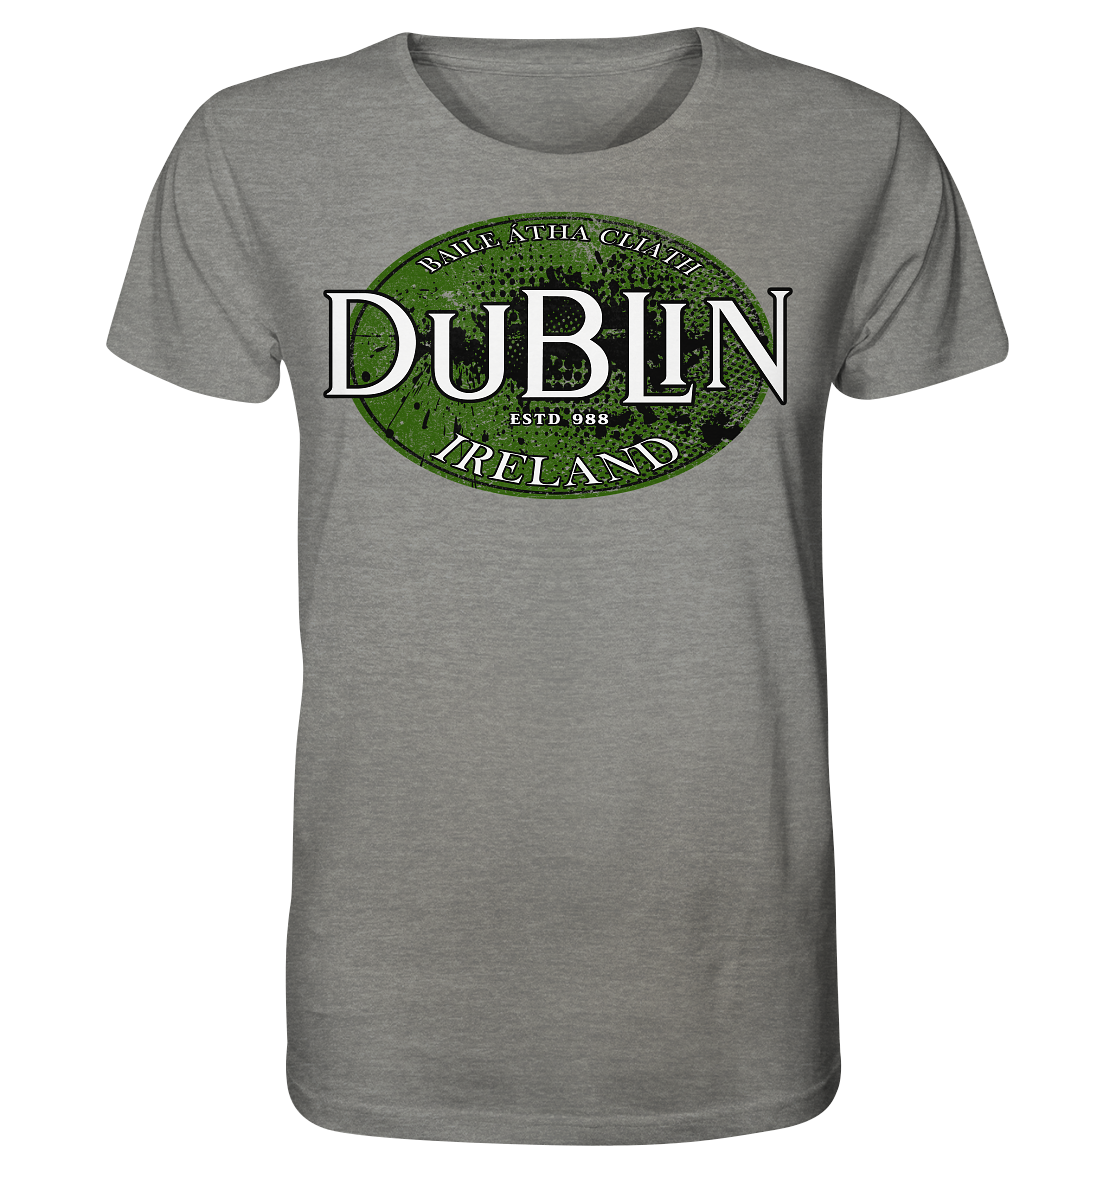 Dublin "Ireland / Baile Átha Cliath / Estd 988" - Organic Shirt (meliert)